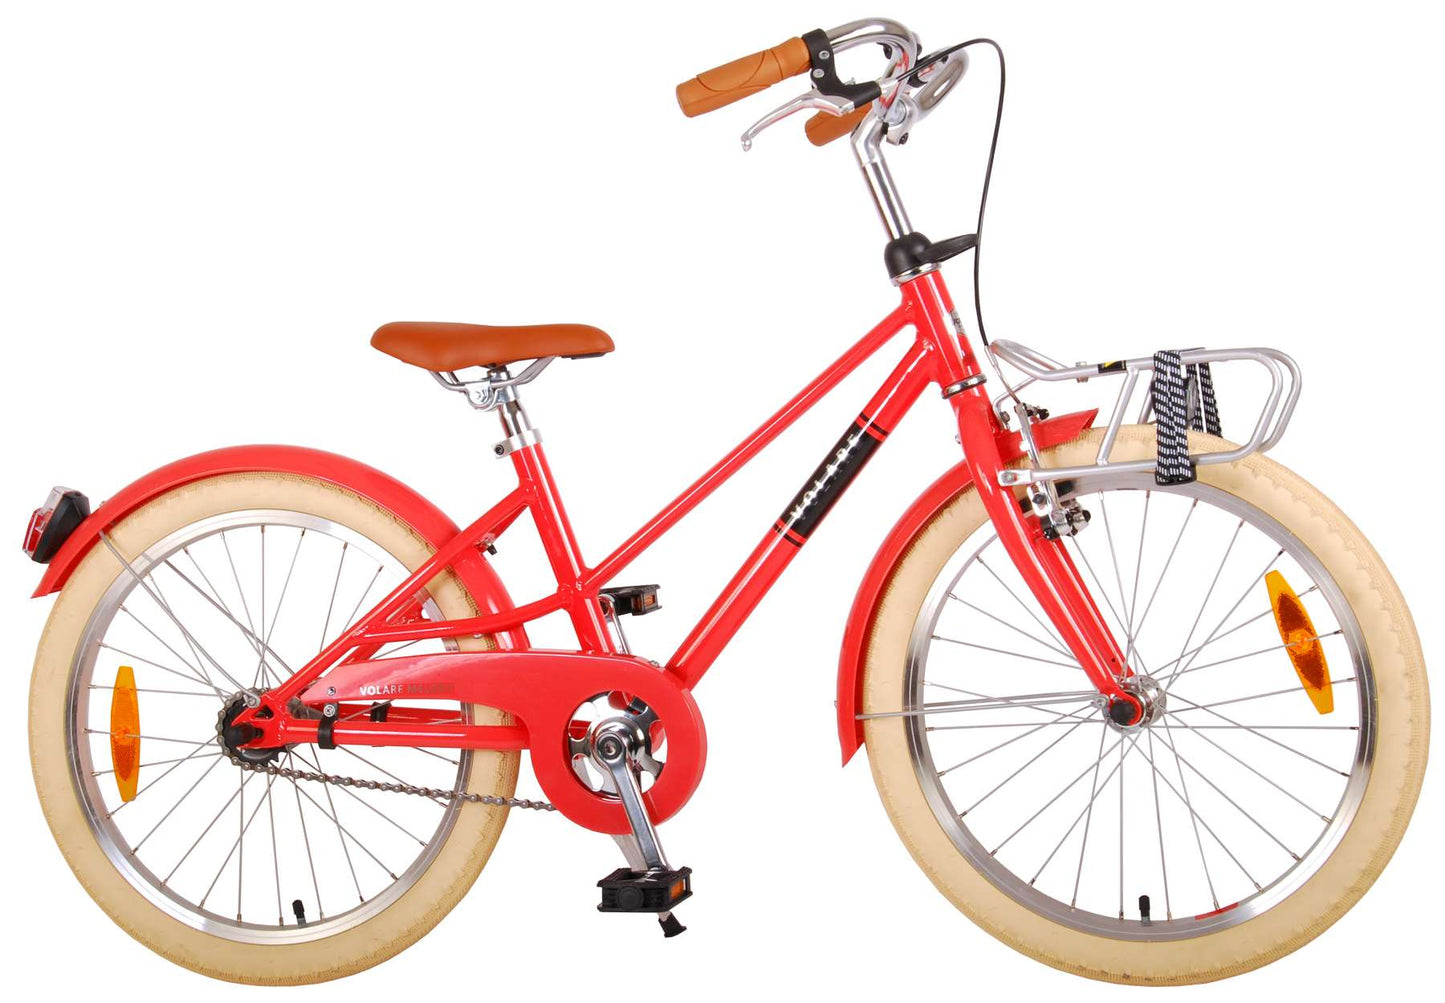 Volare Melody Bicycle para niños - Girls - 20 pulgadas - Coral Red - Colección Prime